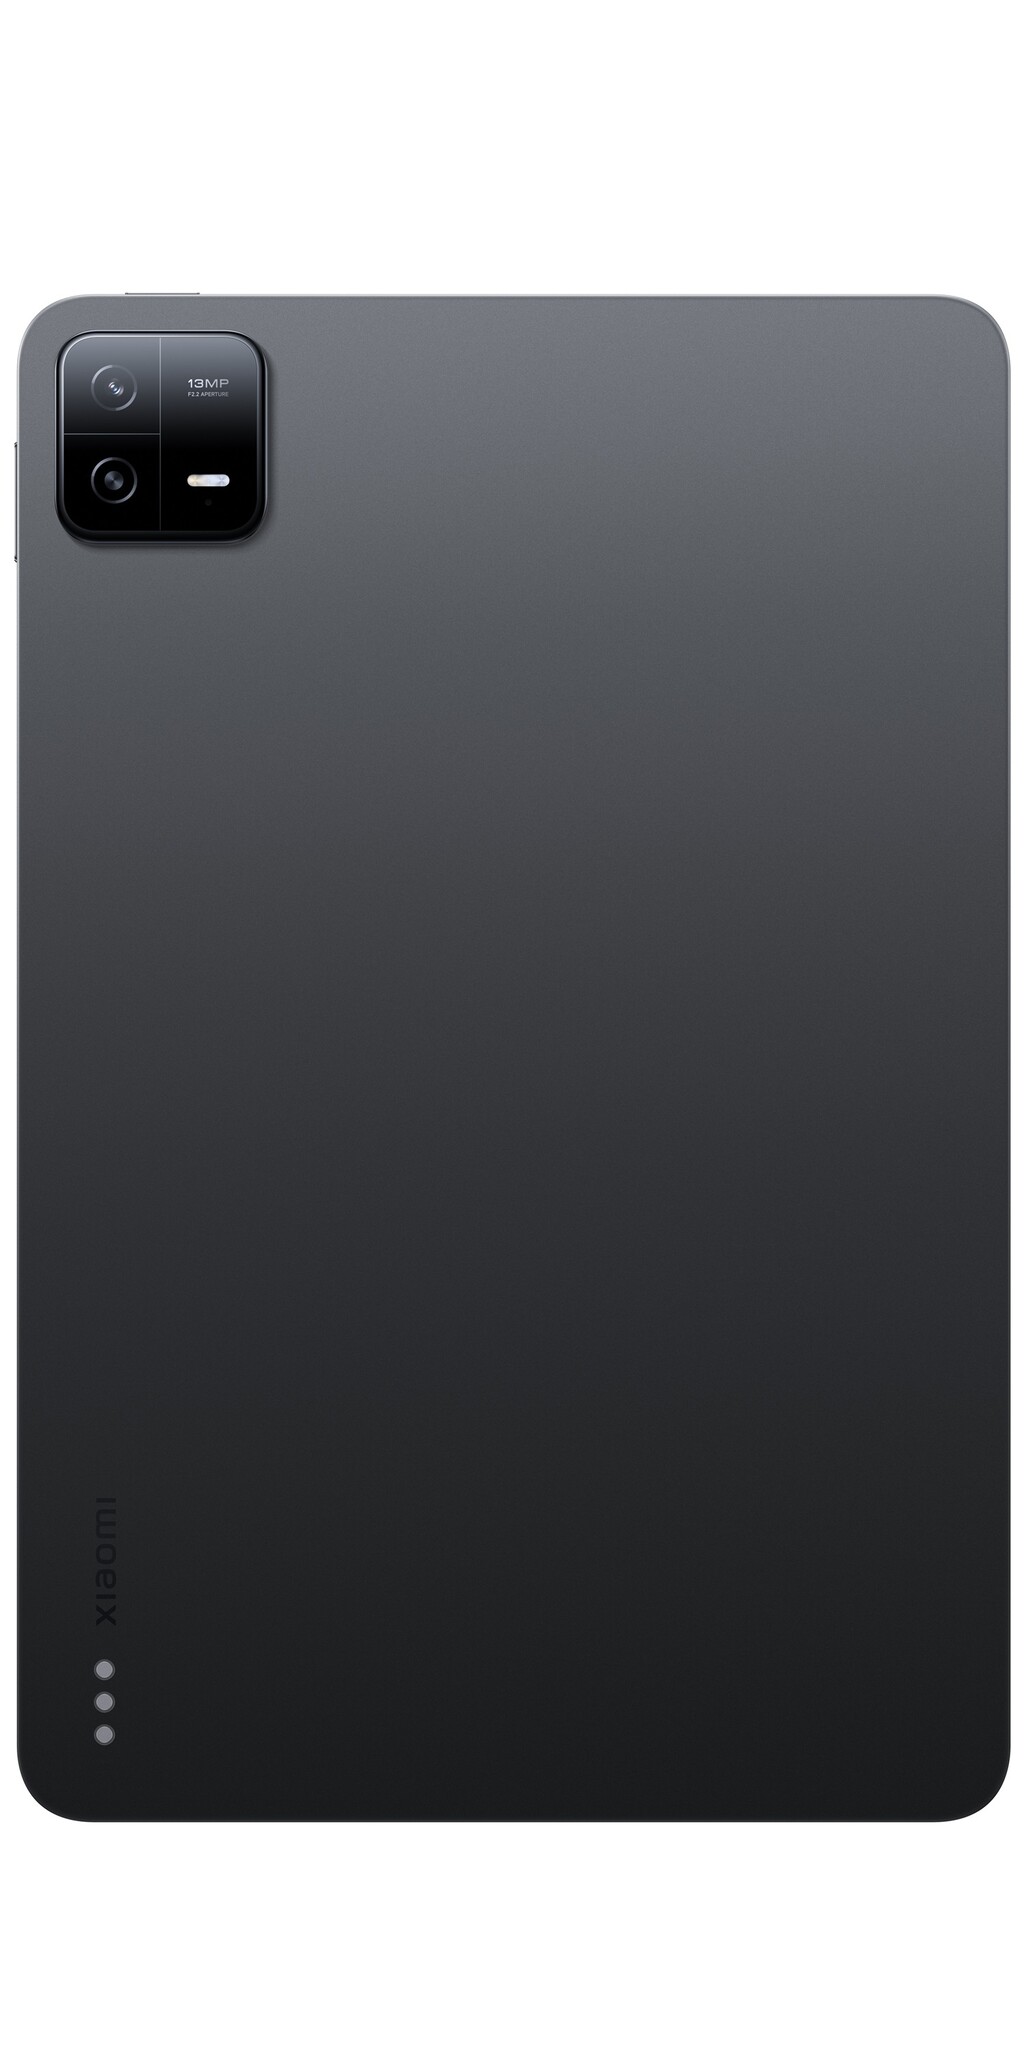 Xiaomi Pad 6 8GB 256GB - TechPunt